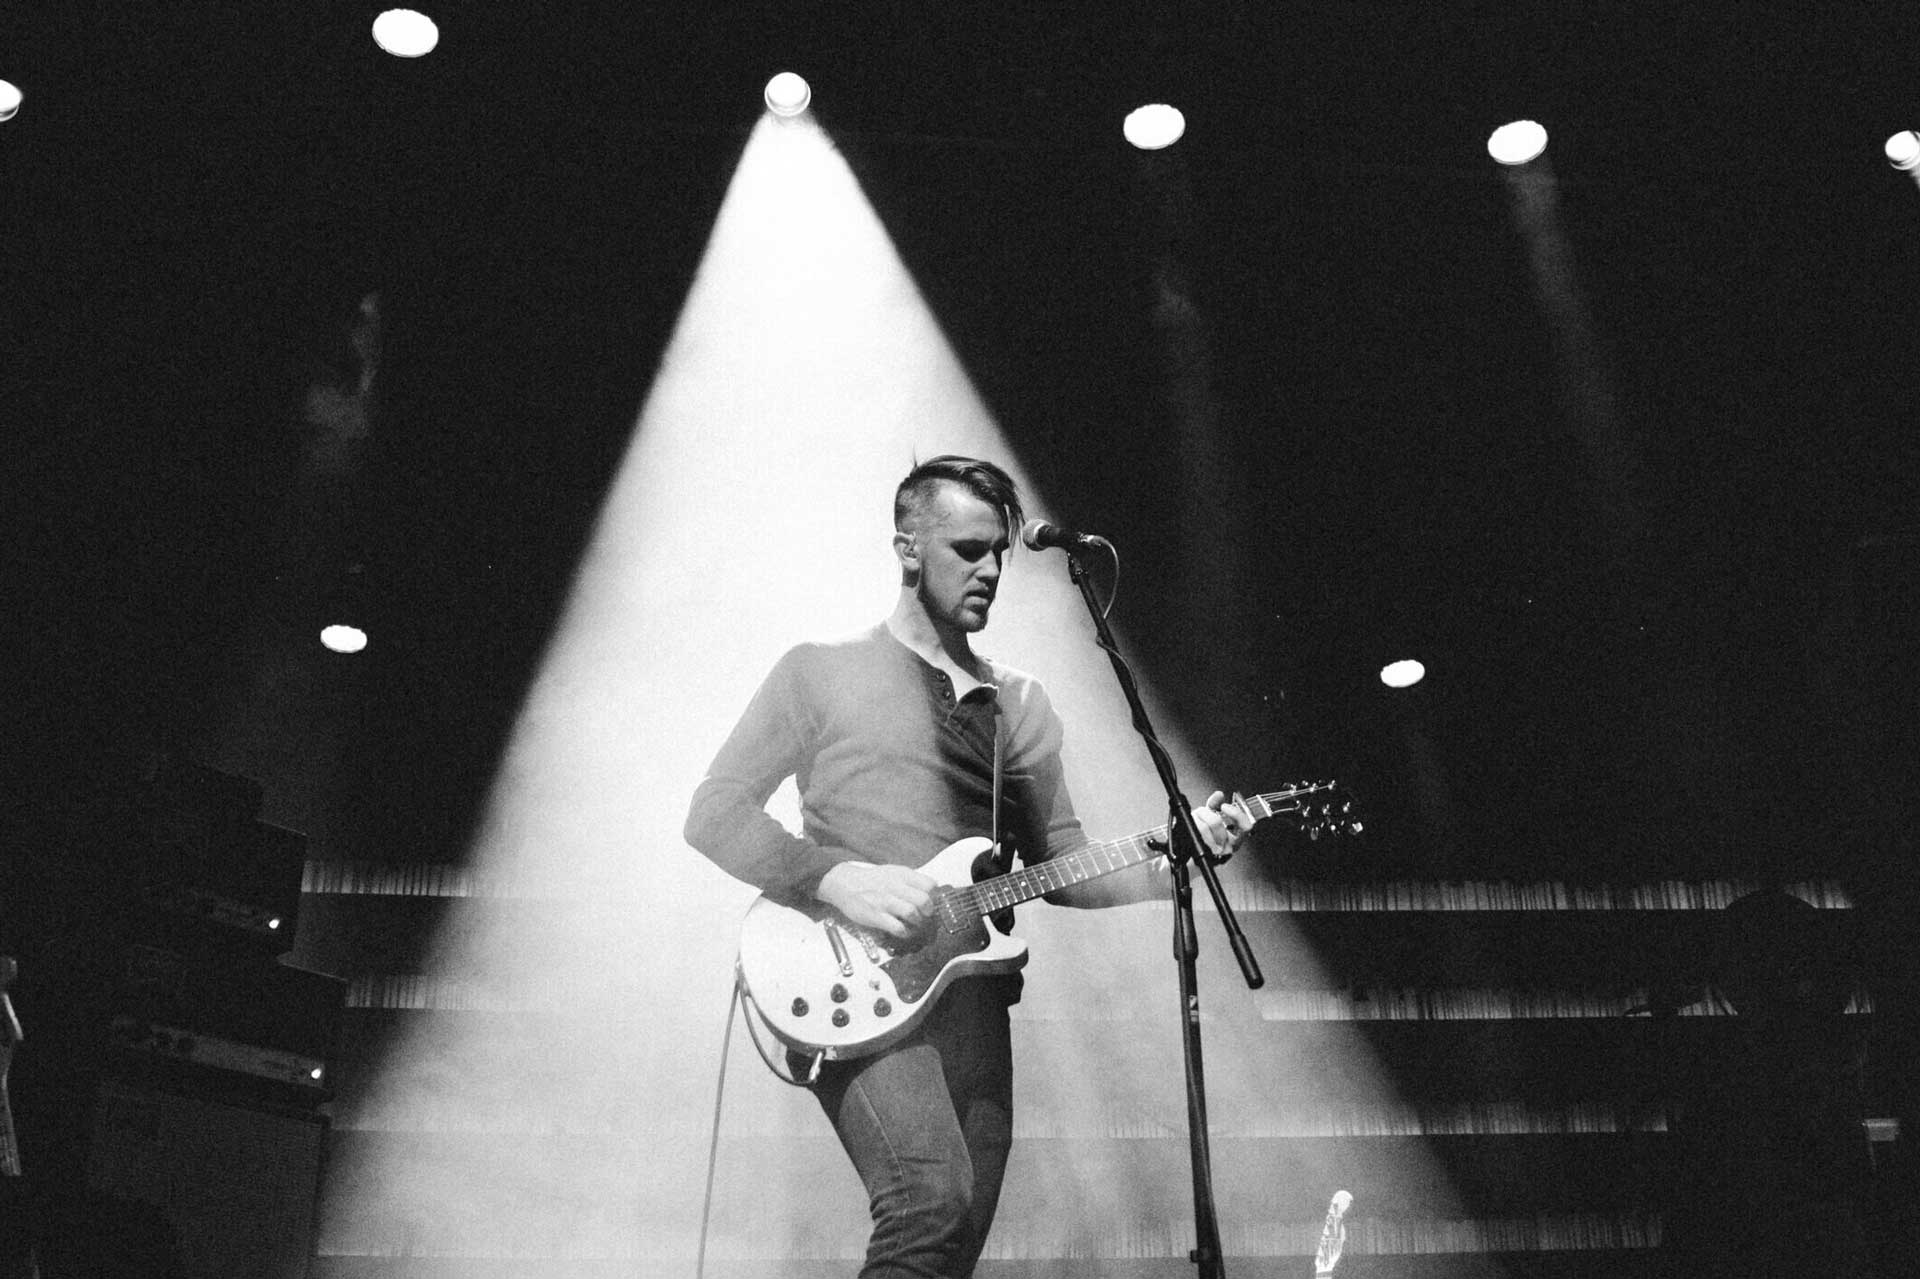 El músico Peter Ferguson sobre un escenario, tocando la guitarra bajo la luz de un foco.